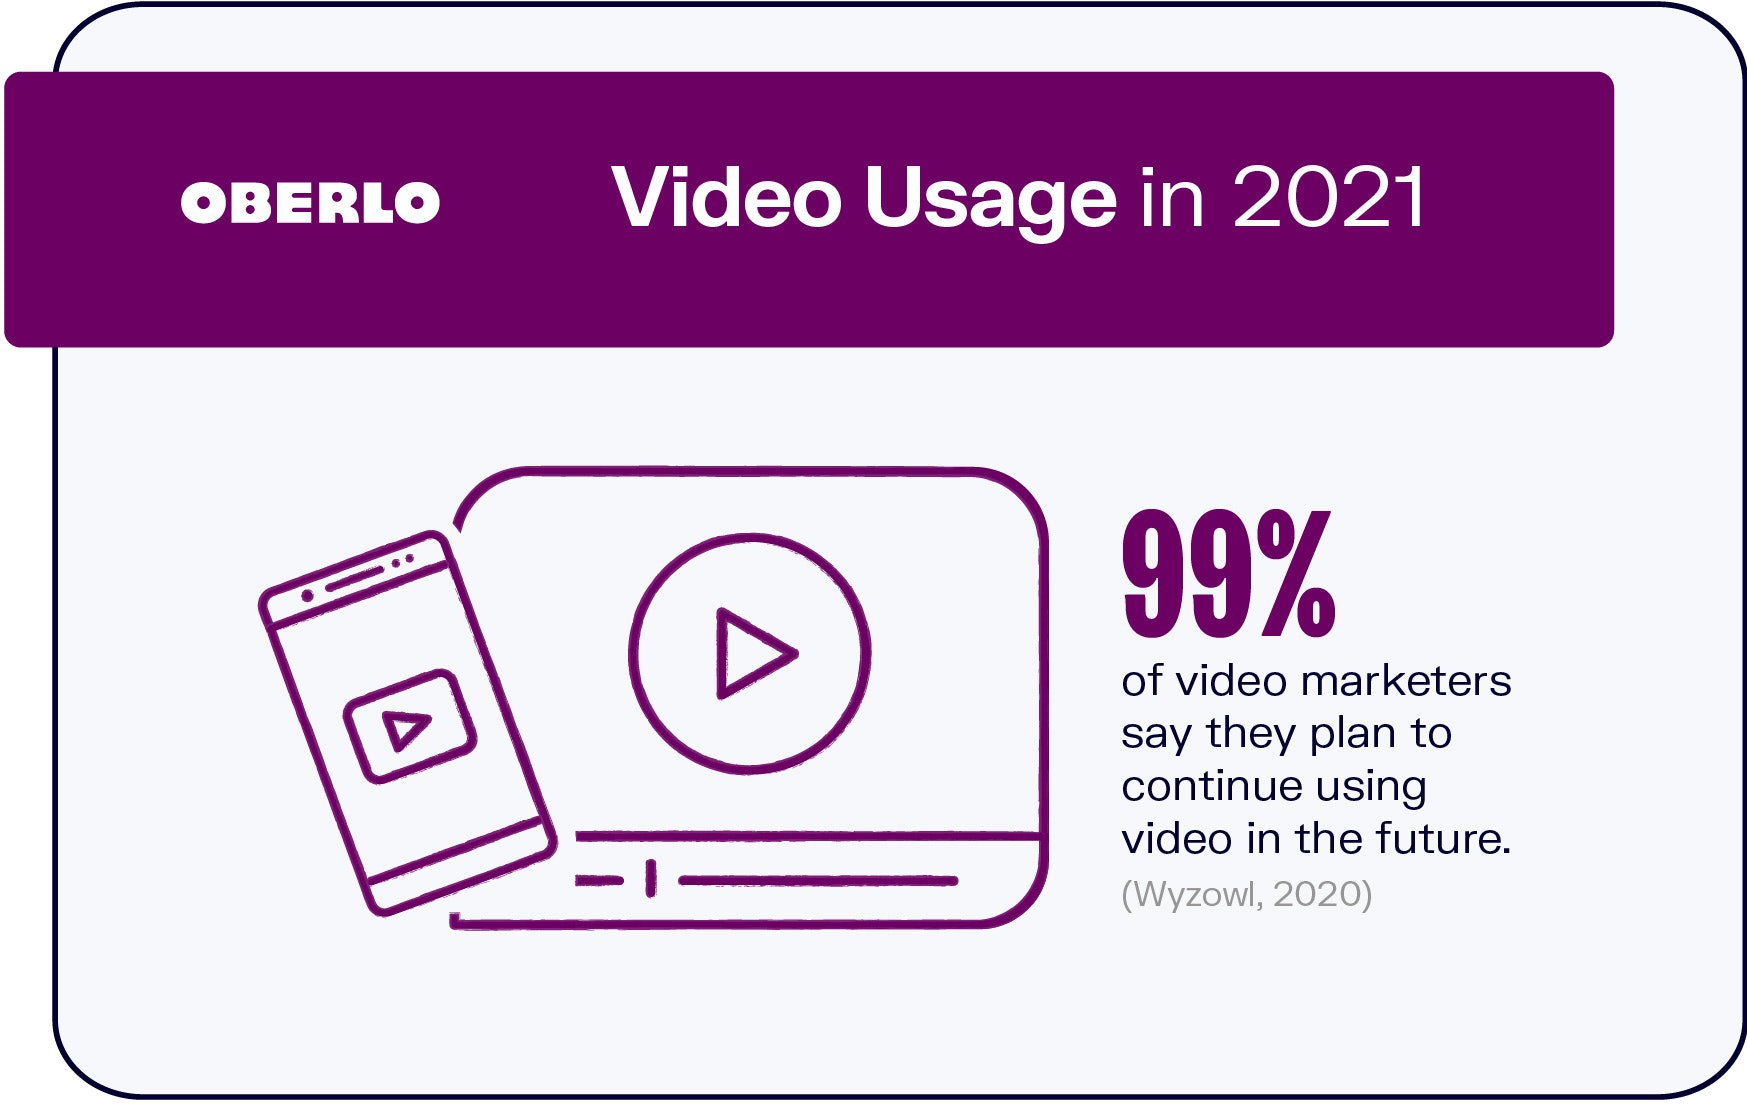 Uso de videos en 2021